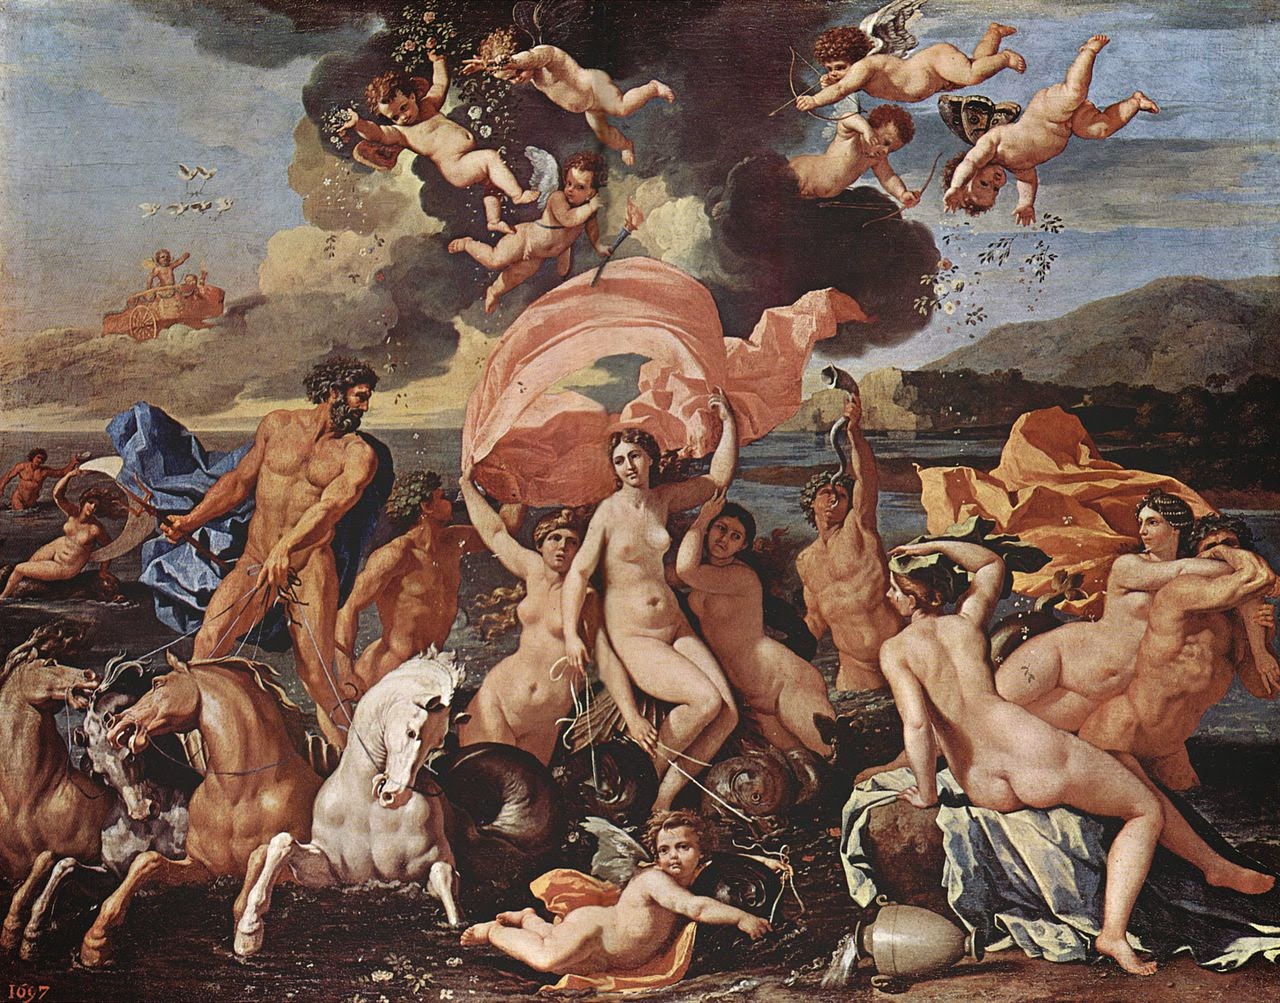 Nicolas Poussin, Le Triomphe de Venus (1635-1636)